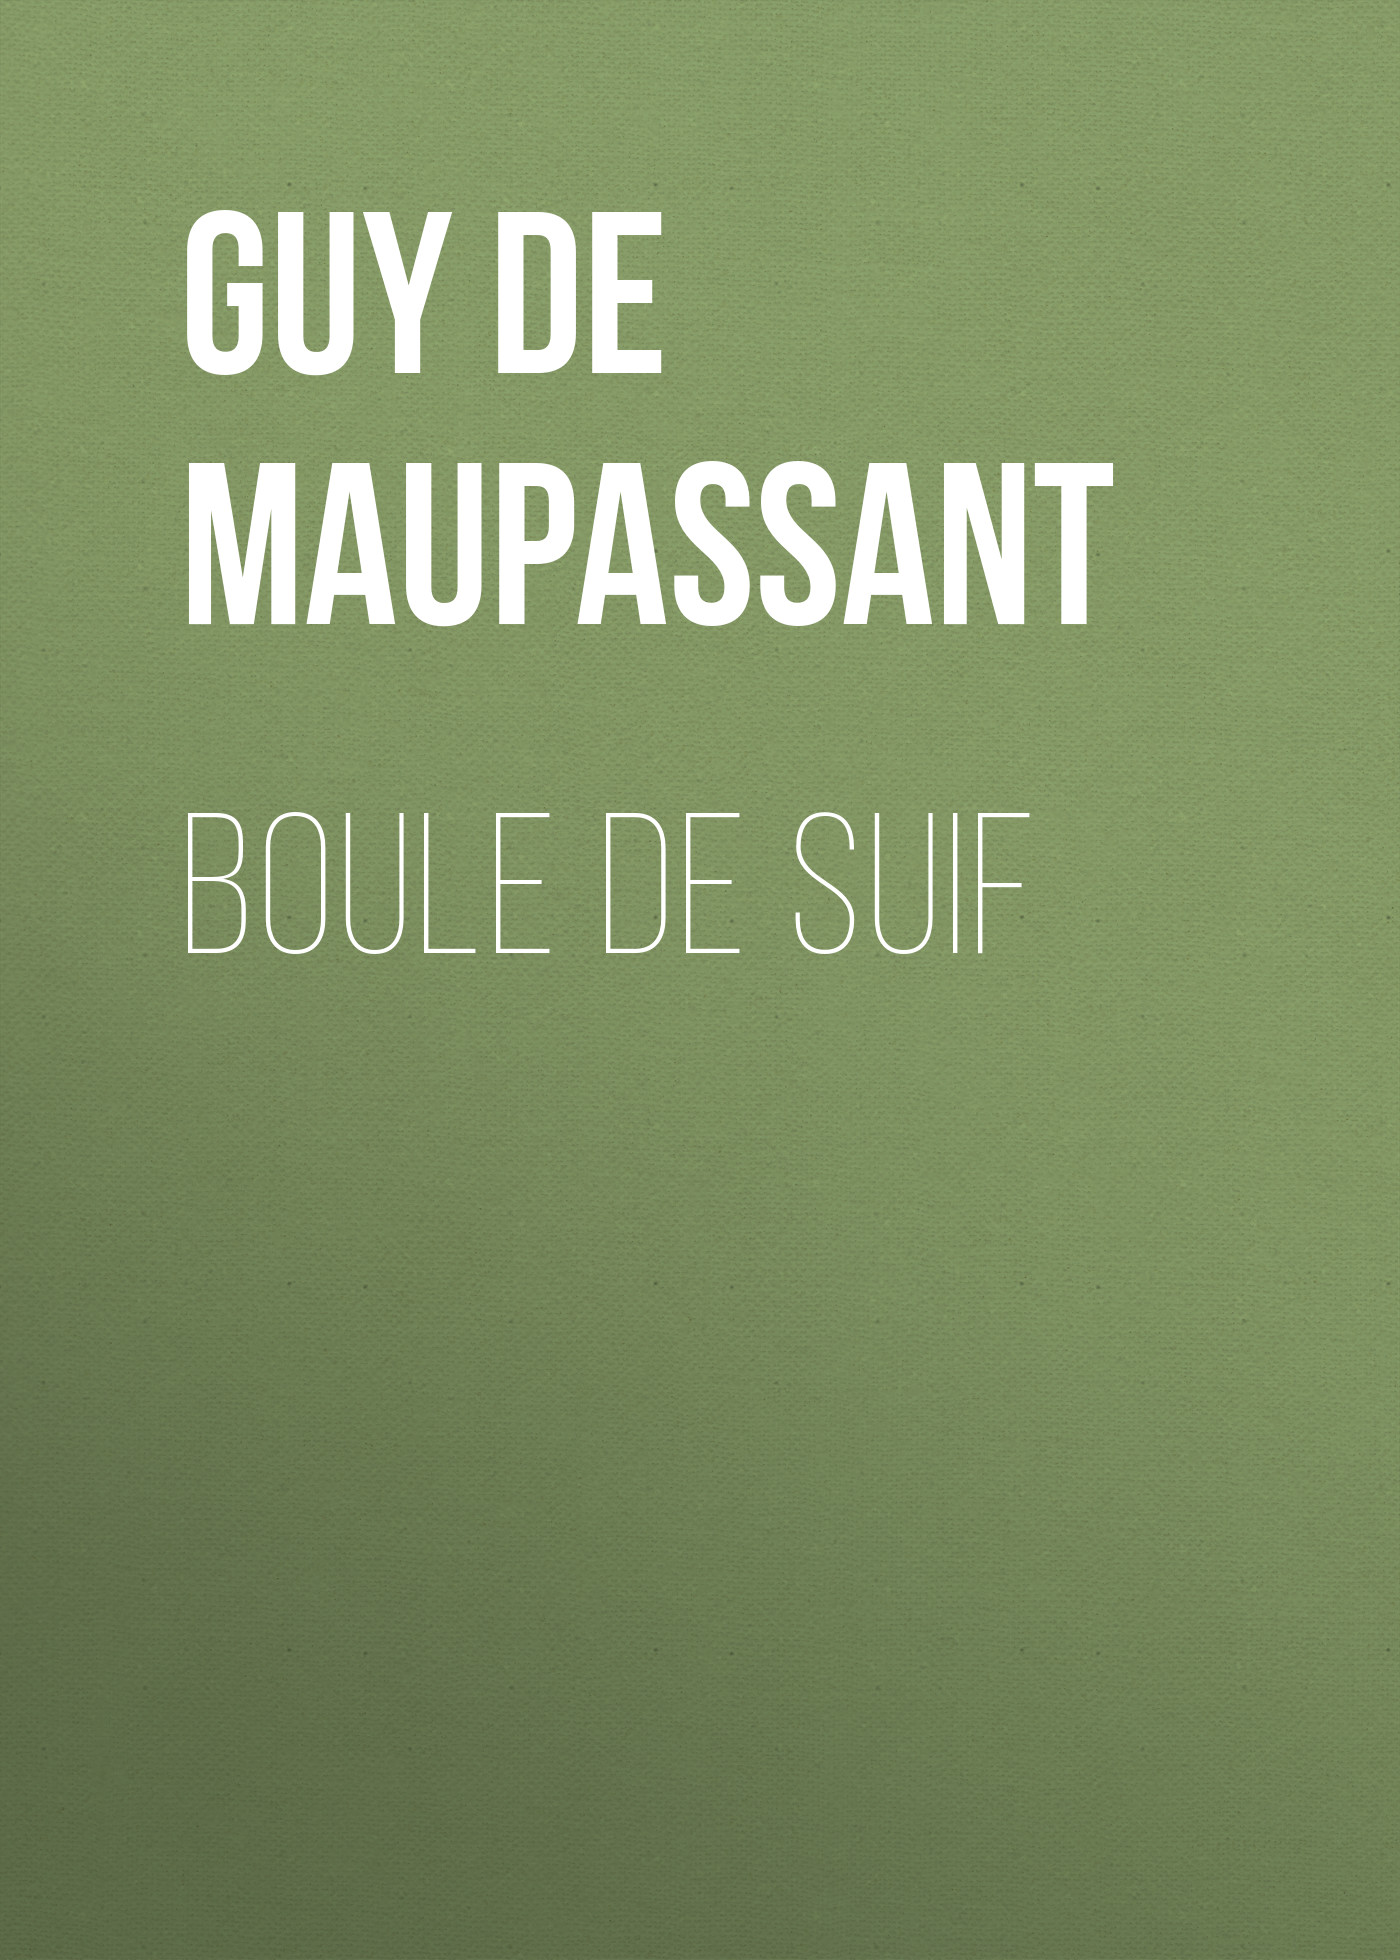 Книга Boule de Suif из серии , созданная Guy Maupassant, может относится к жанру Литература 19 века, Зарубежная старинная литература, Зарубежная классика. Стоимость электронной книги Boule de Suif с идентификатором 25292715 составляет 0 руб.